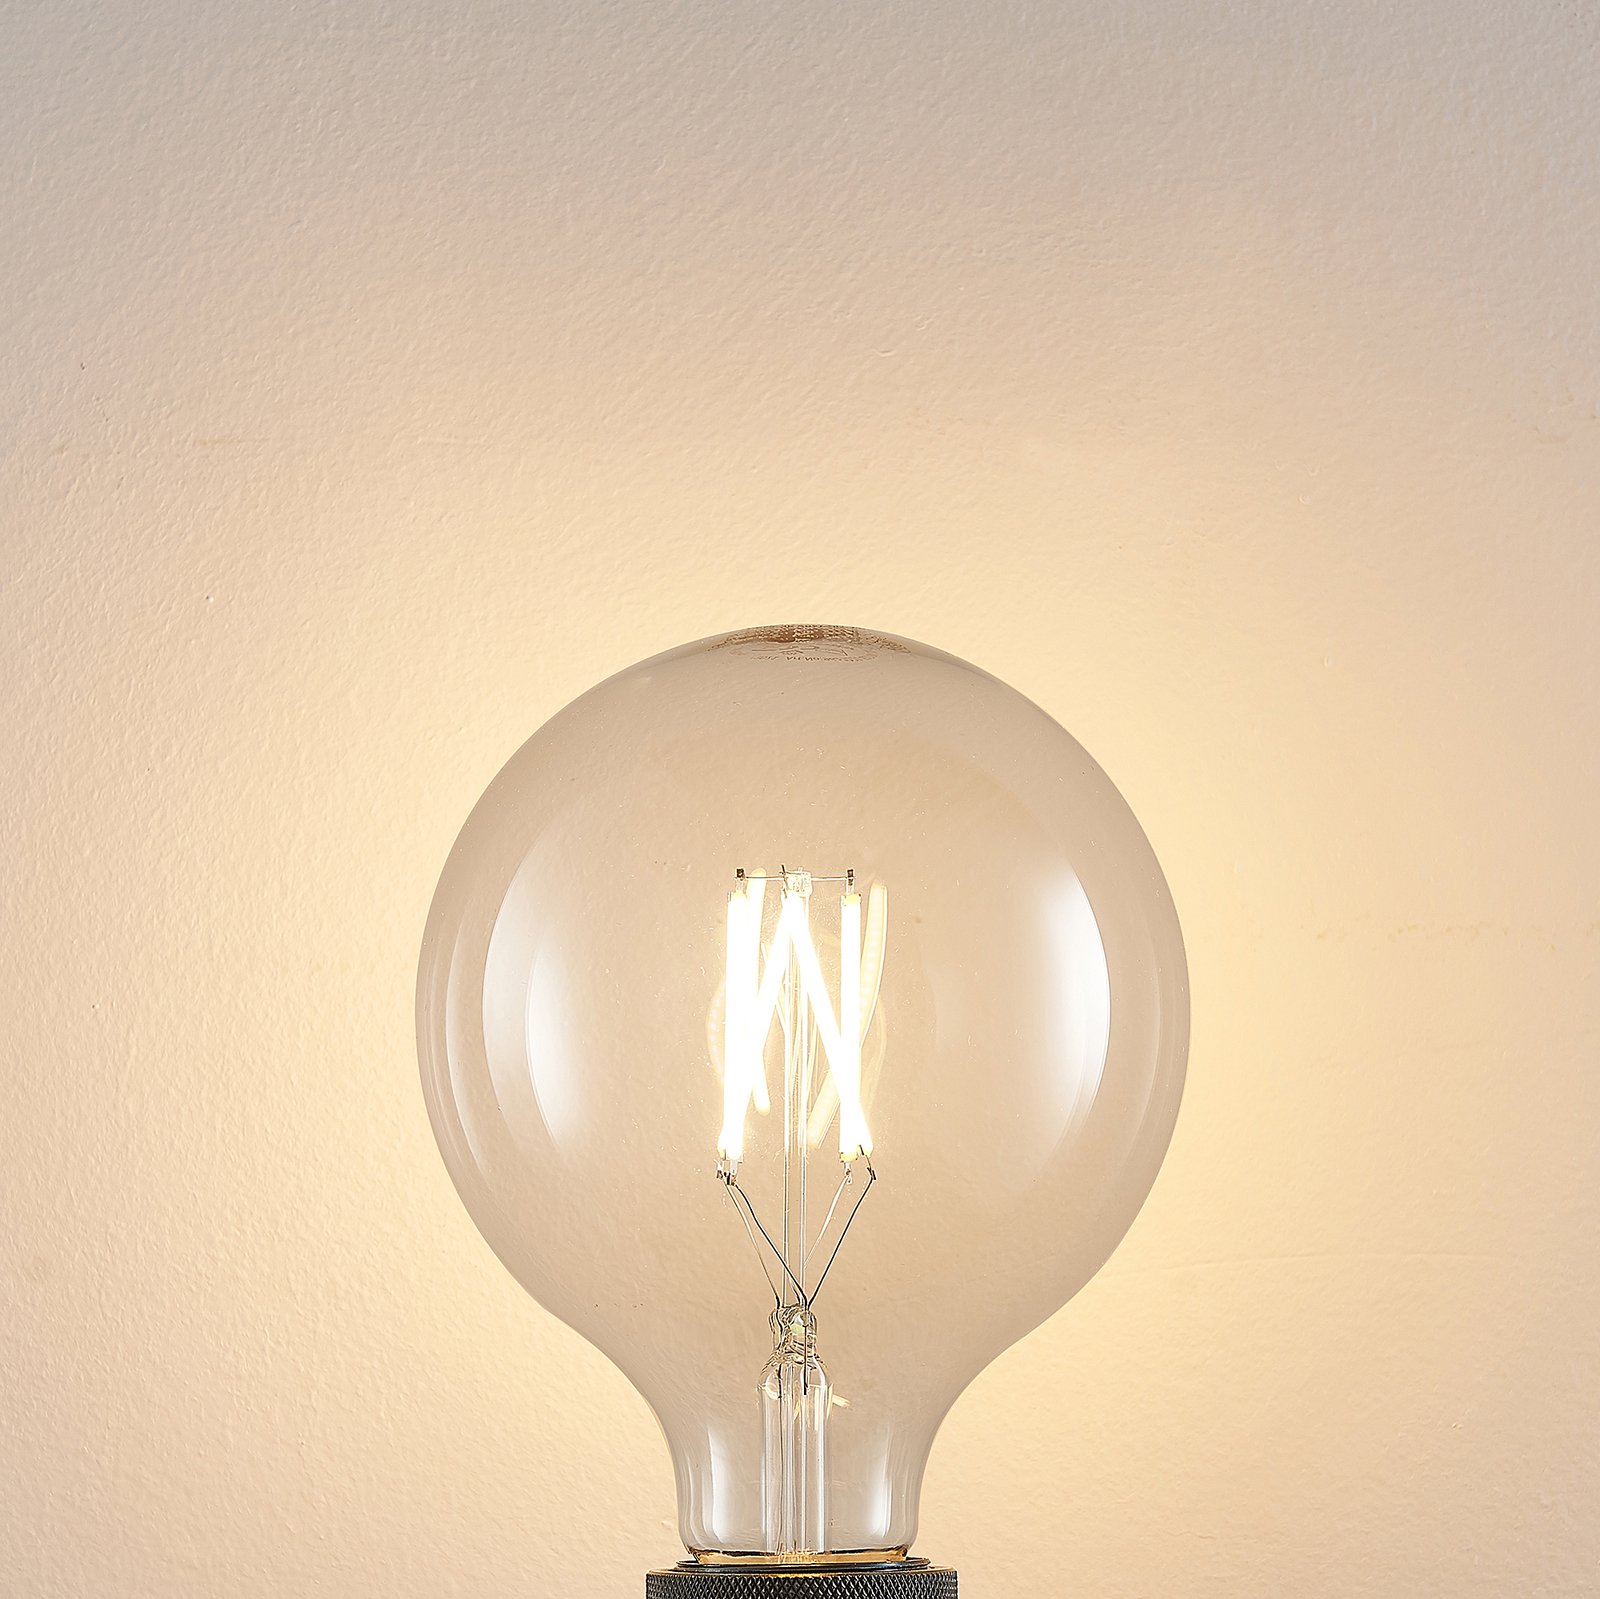 LED-Lampe E27 8W 2.700K G125 Globe, Filament, klar